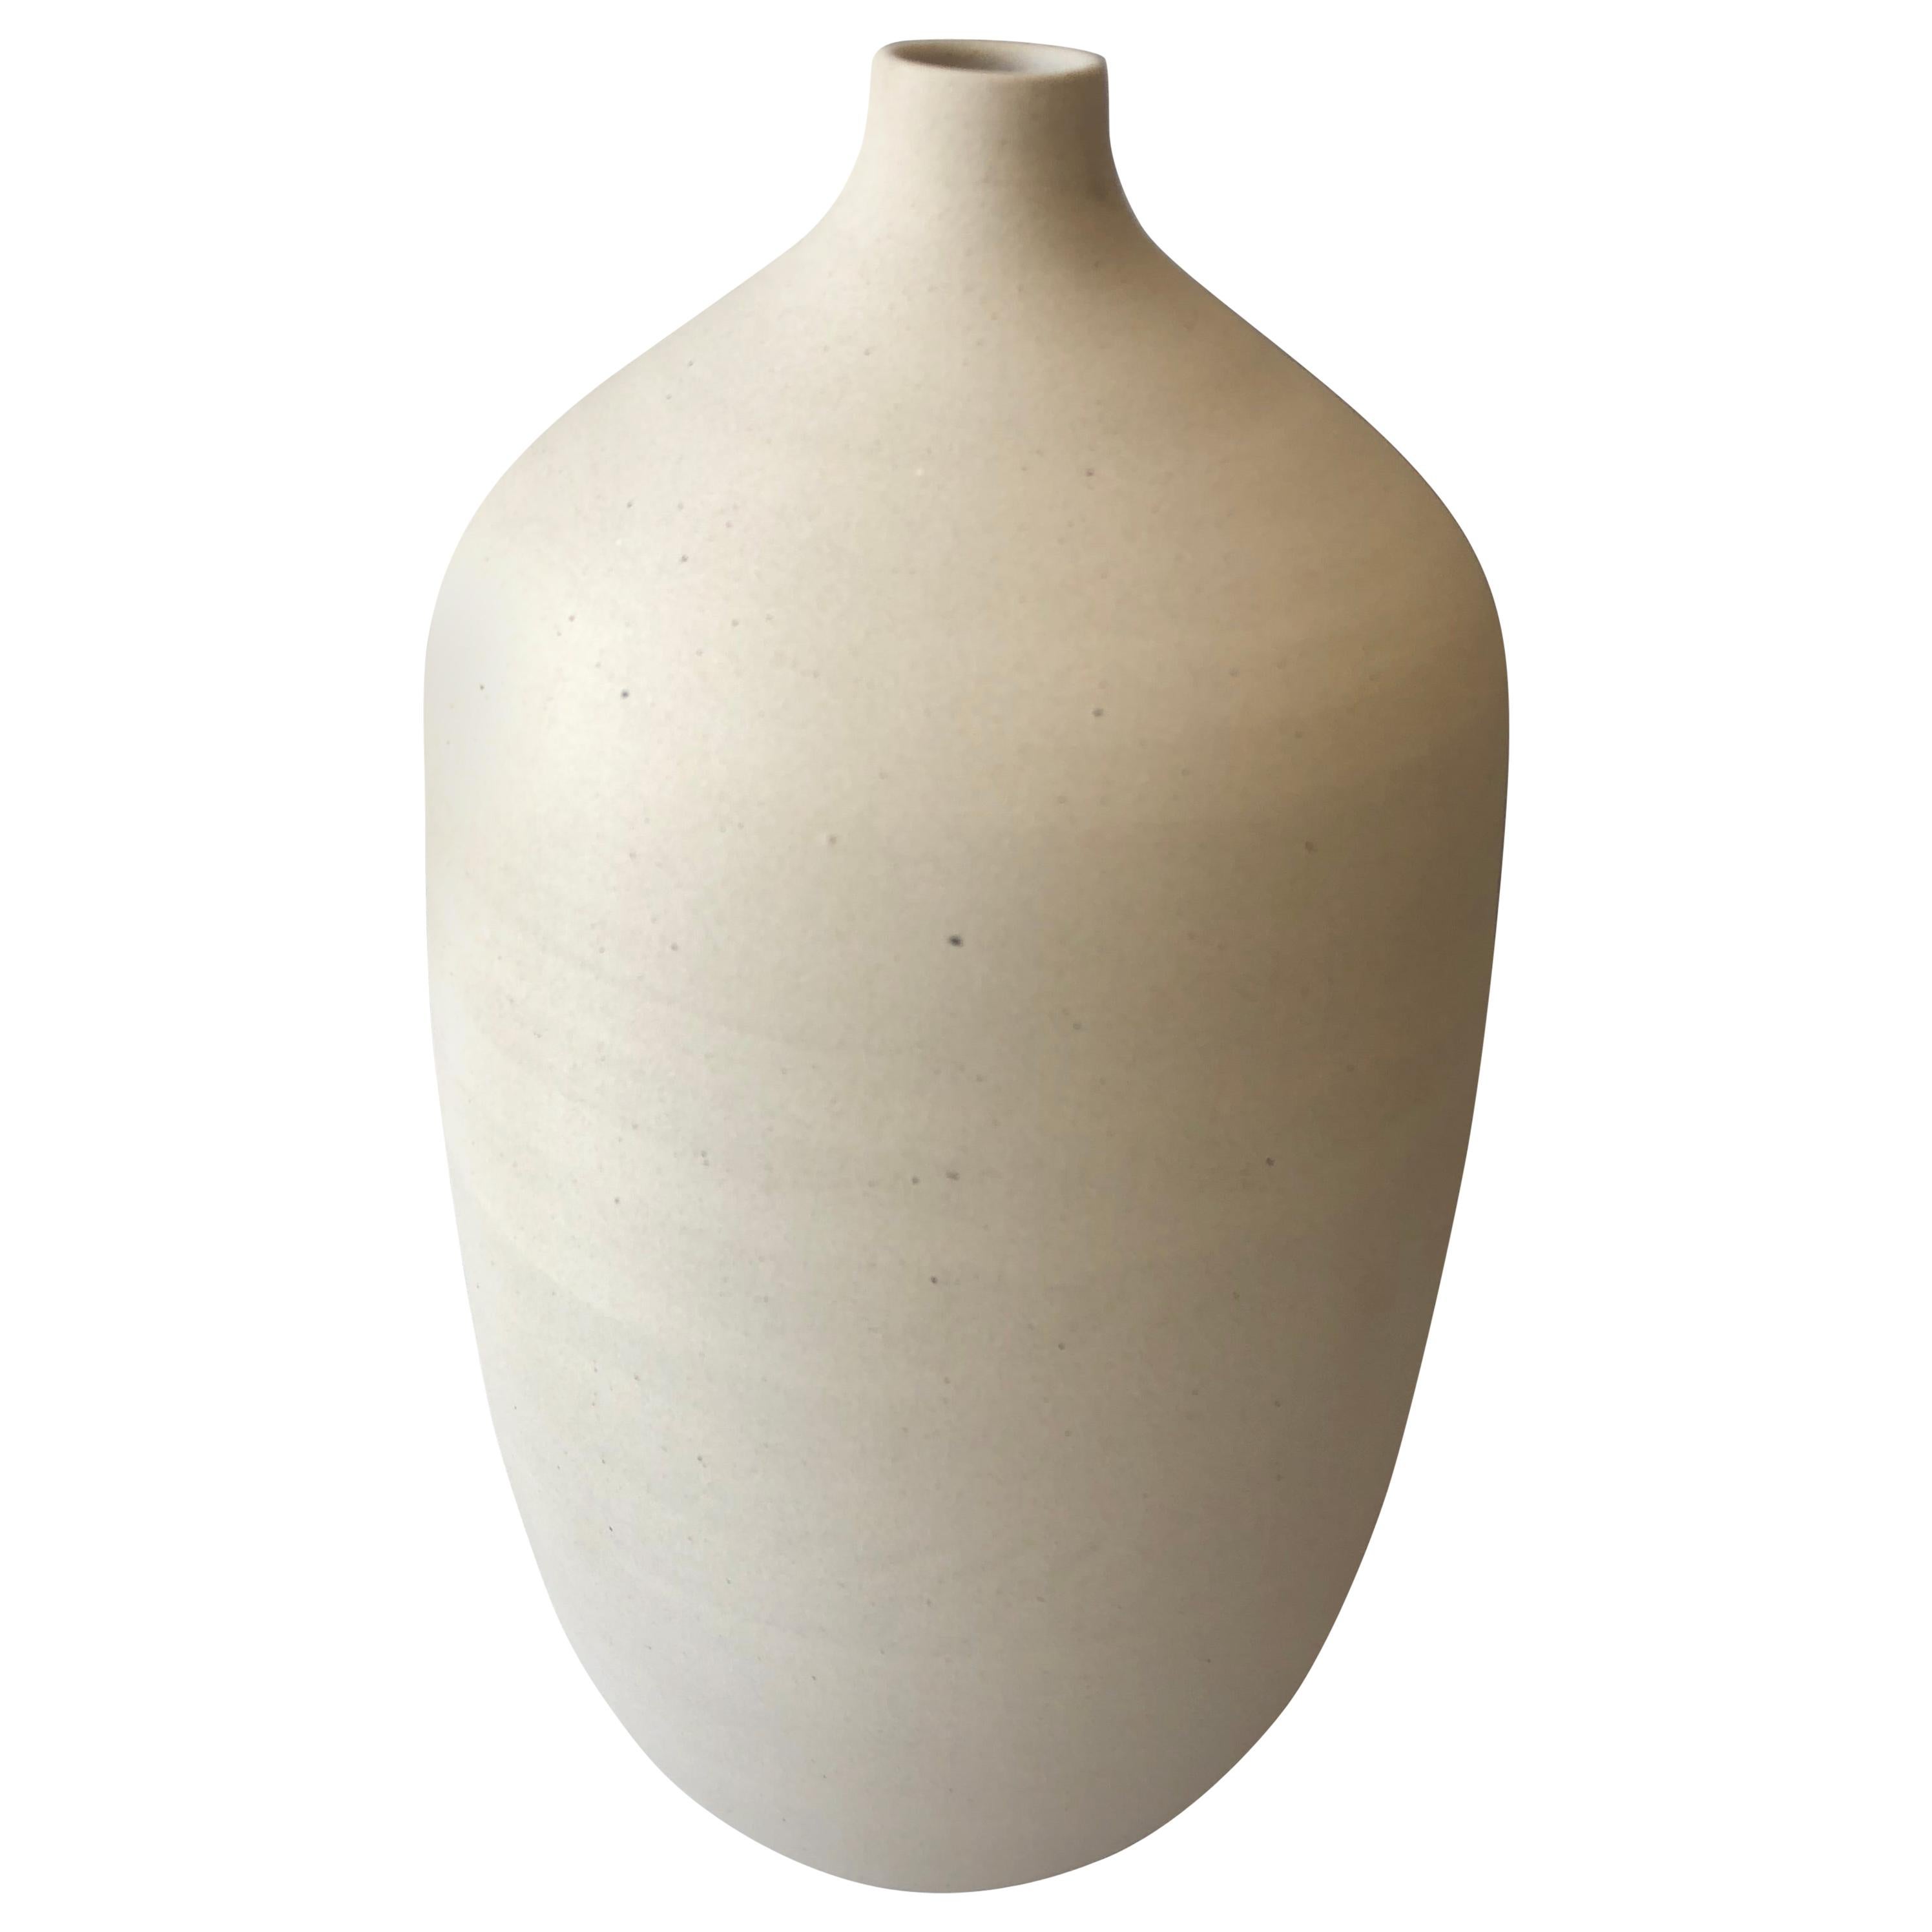 Handmade Ceramic Bottle Vase in Cream, in Stock